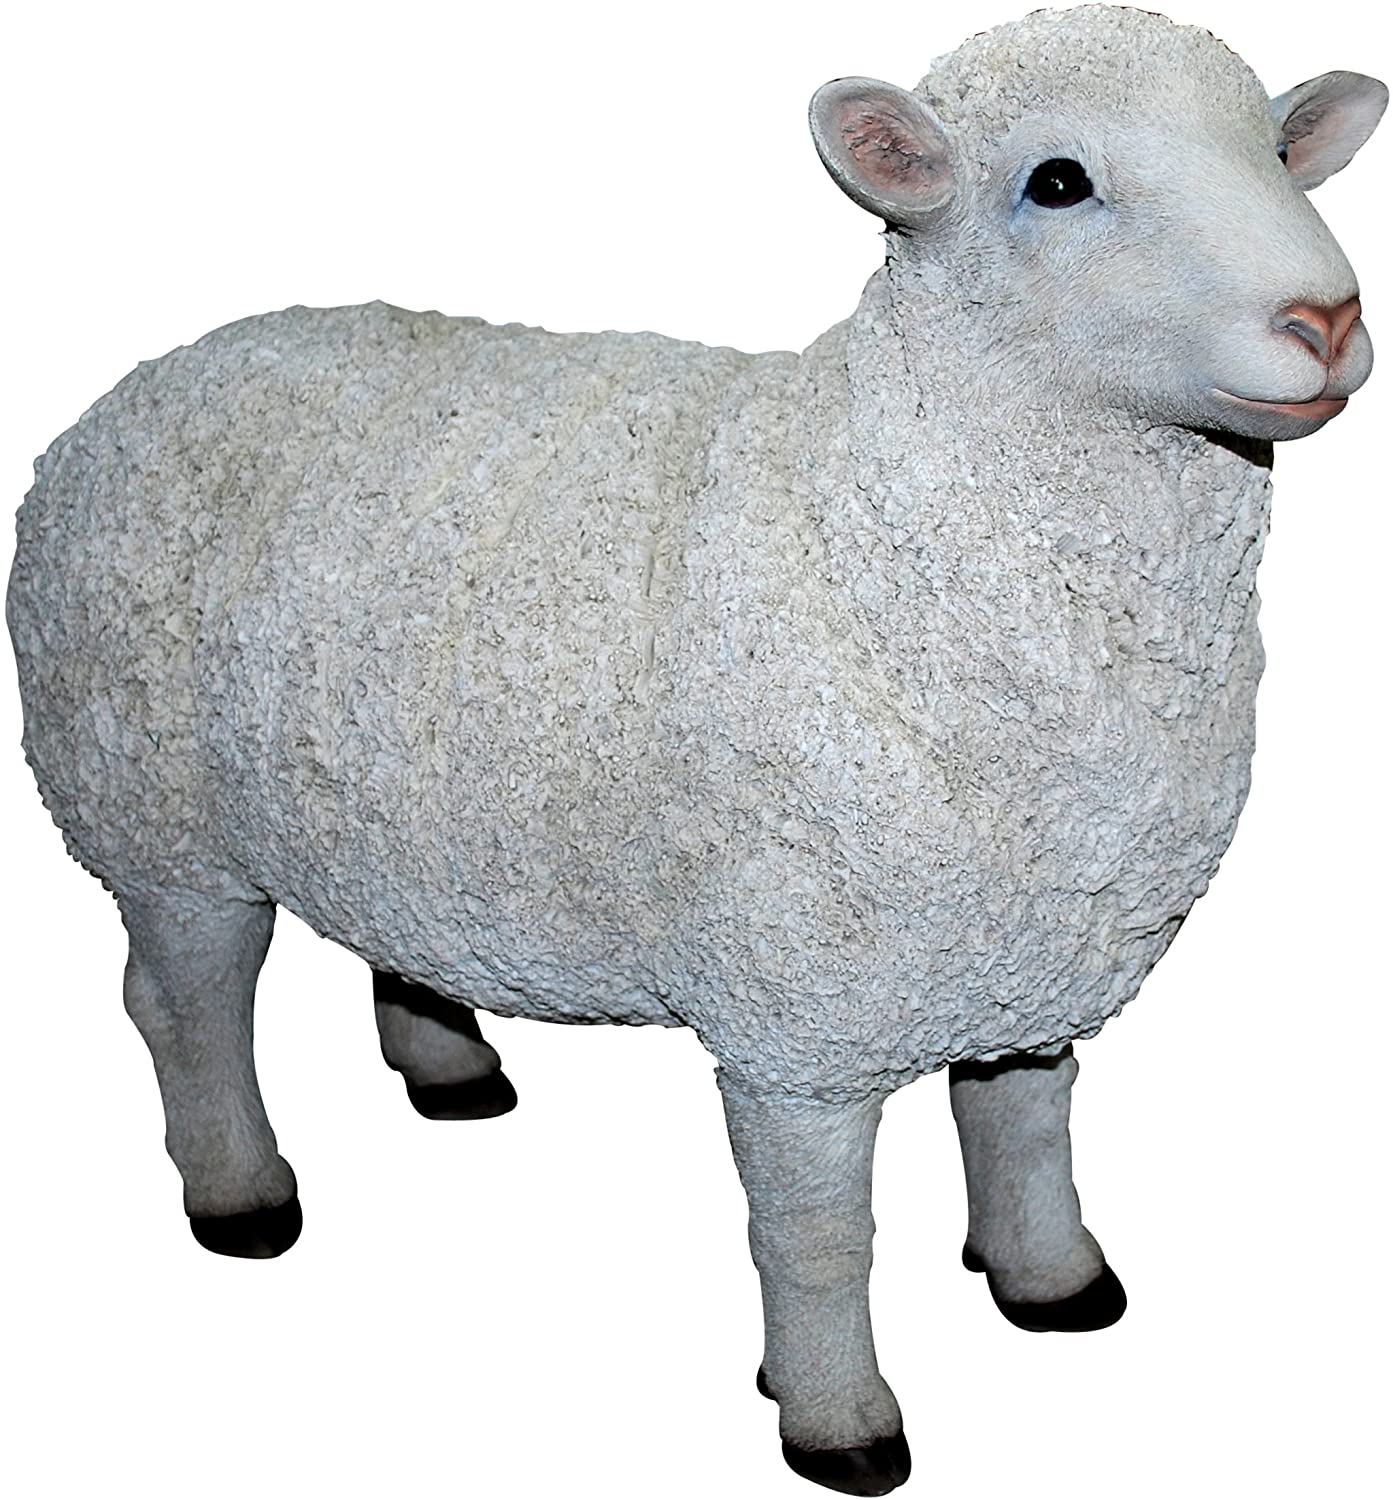 Vivid Arts Real Life Size A Sheep